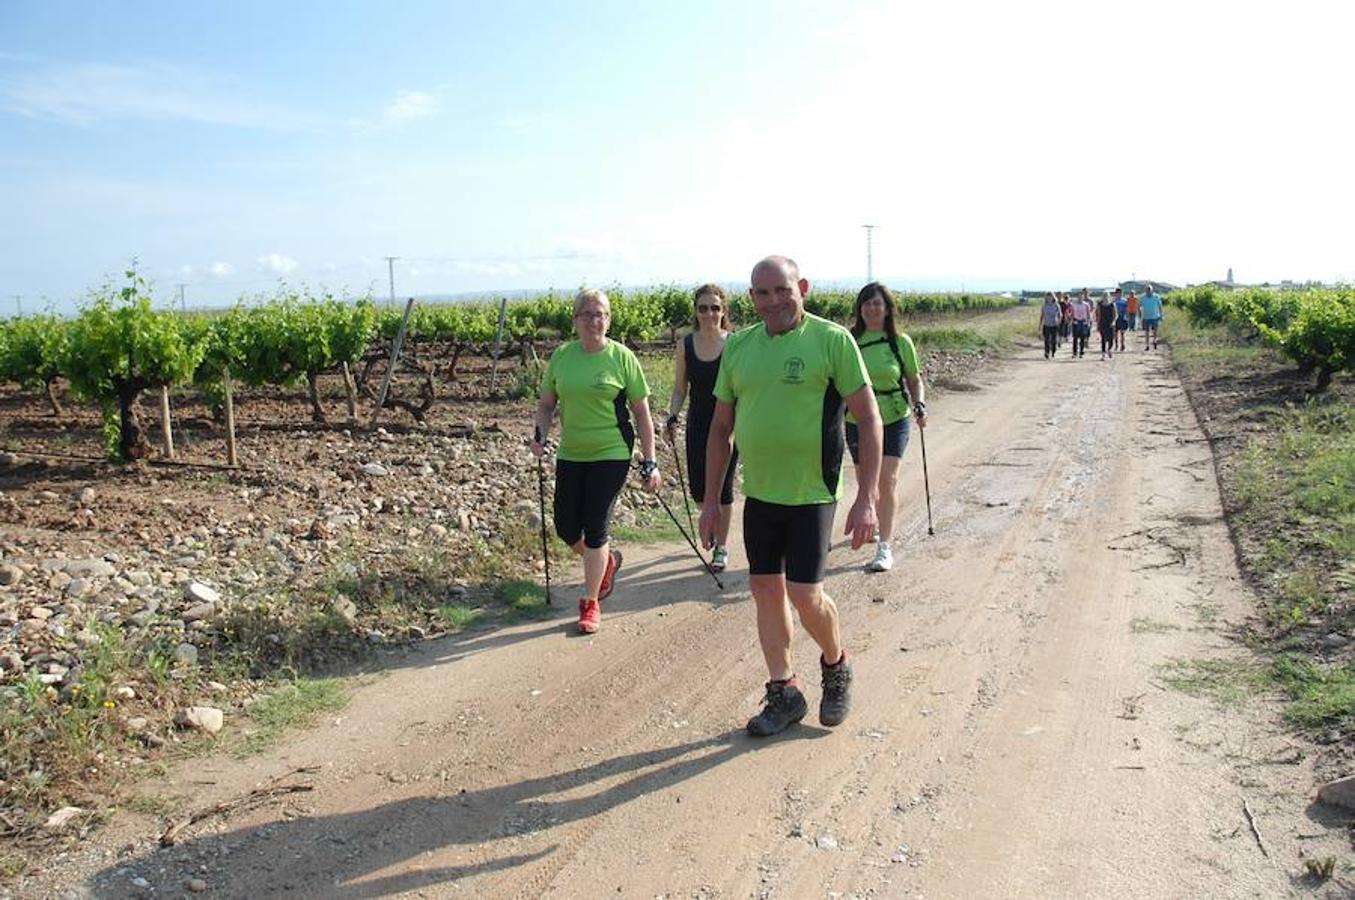 Marcha solidaria y carrera Runners & Wine del sábado por la mañana en Aldeanueva de Ebro.